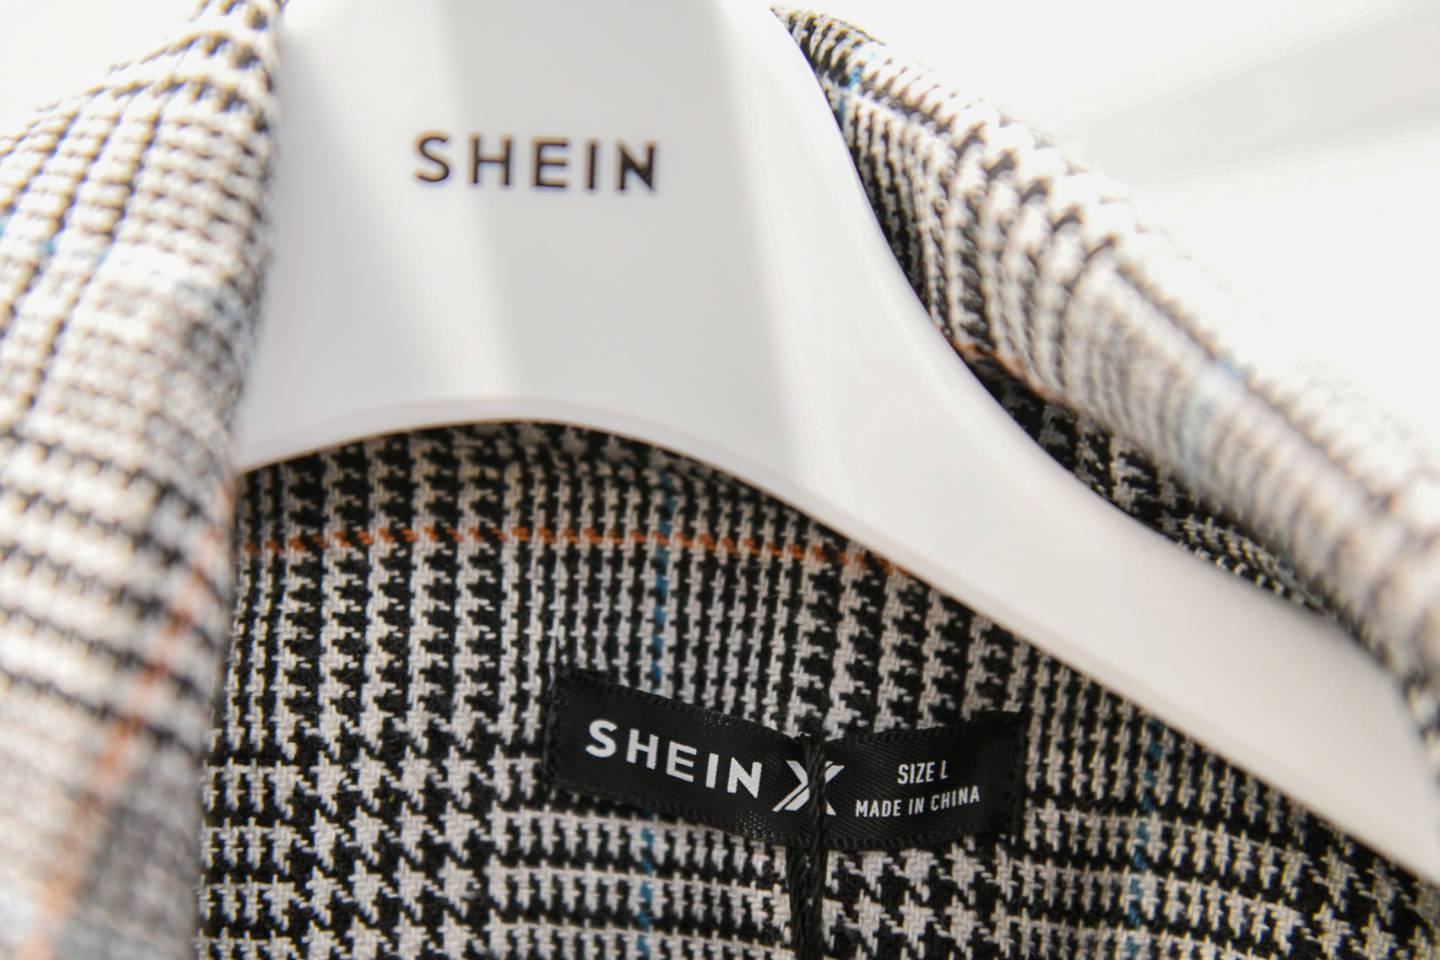 Shein se enfrenta a crecientes críticas por sus prácticas medioambientales, sociales y de gobernanza.